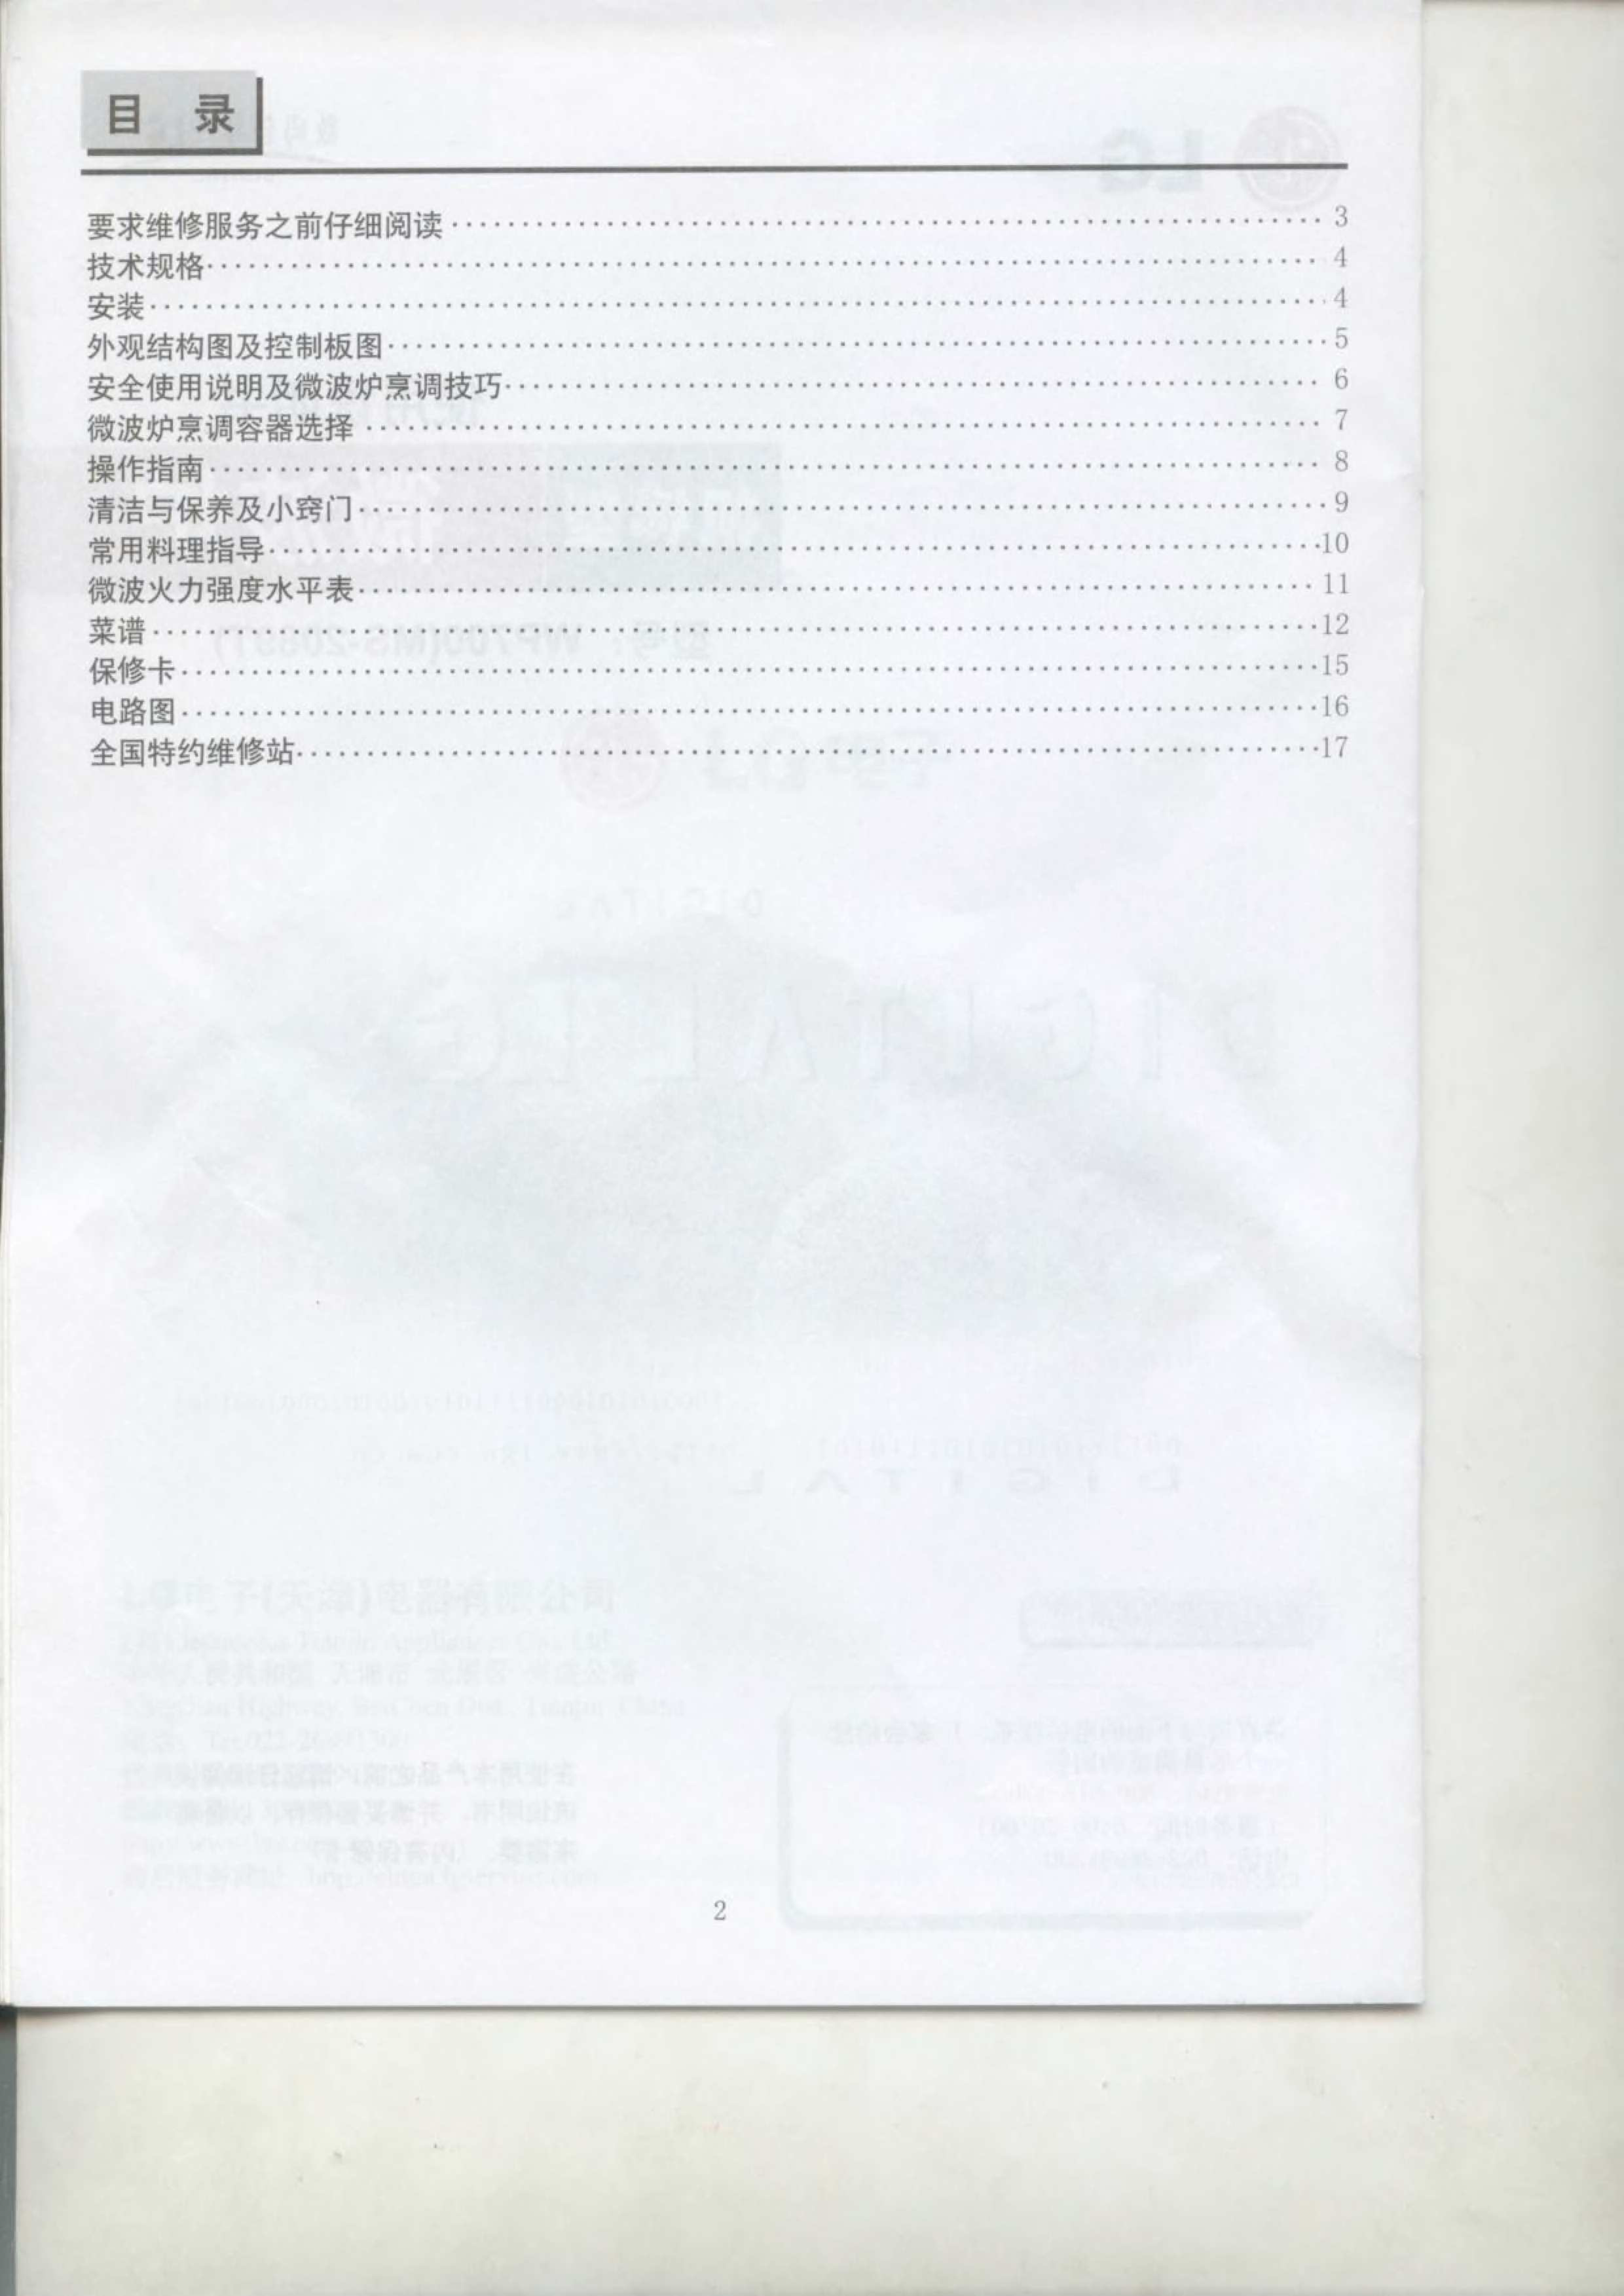 LG MS-2089TW 使用说明书 第1页